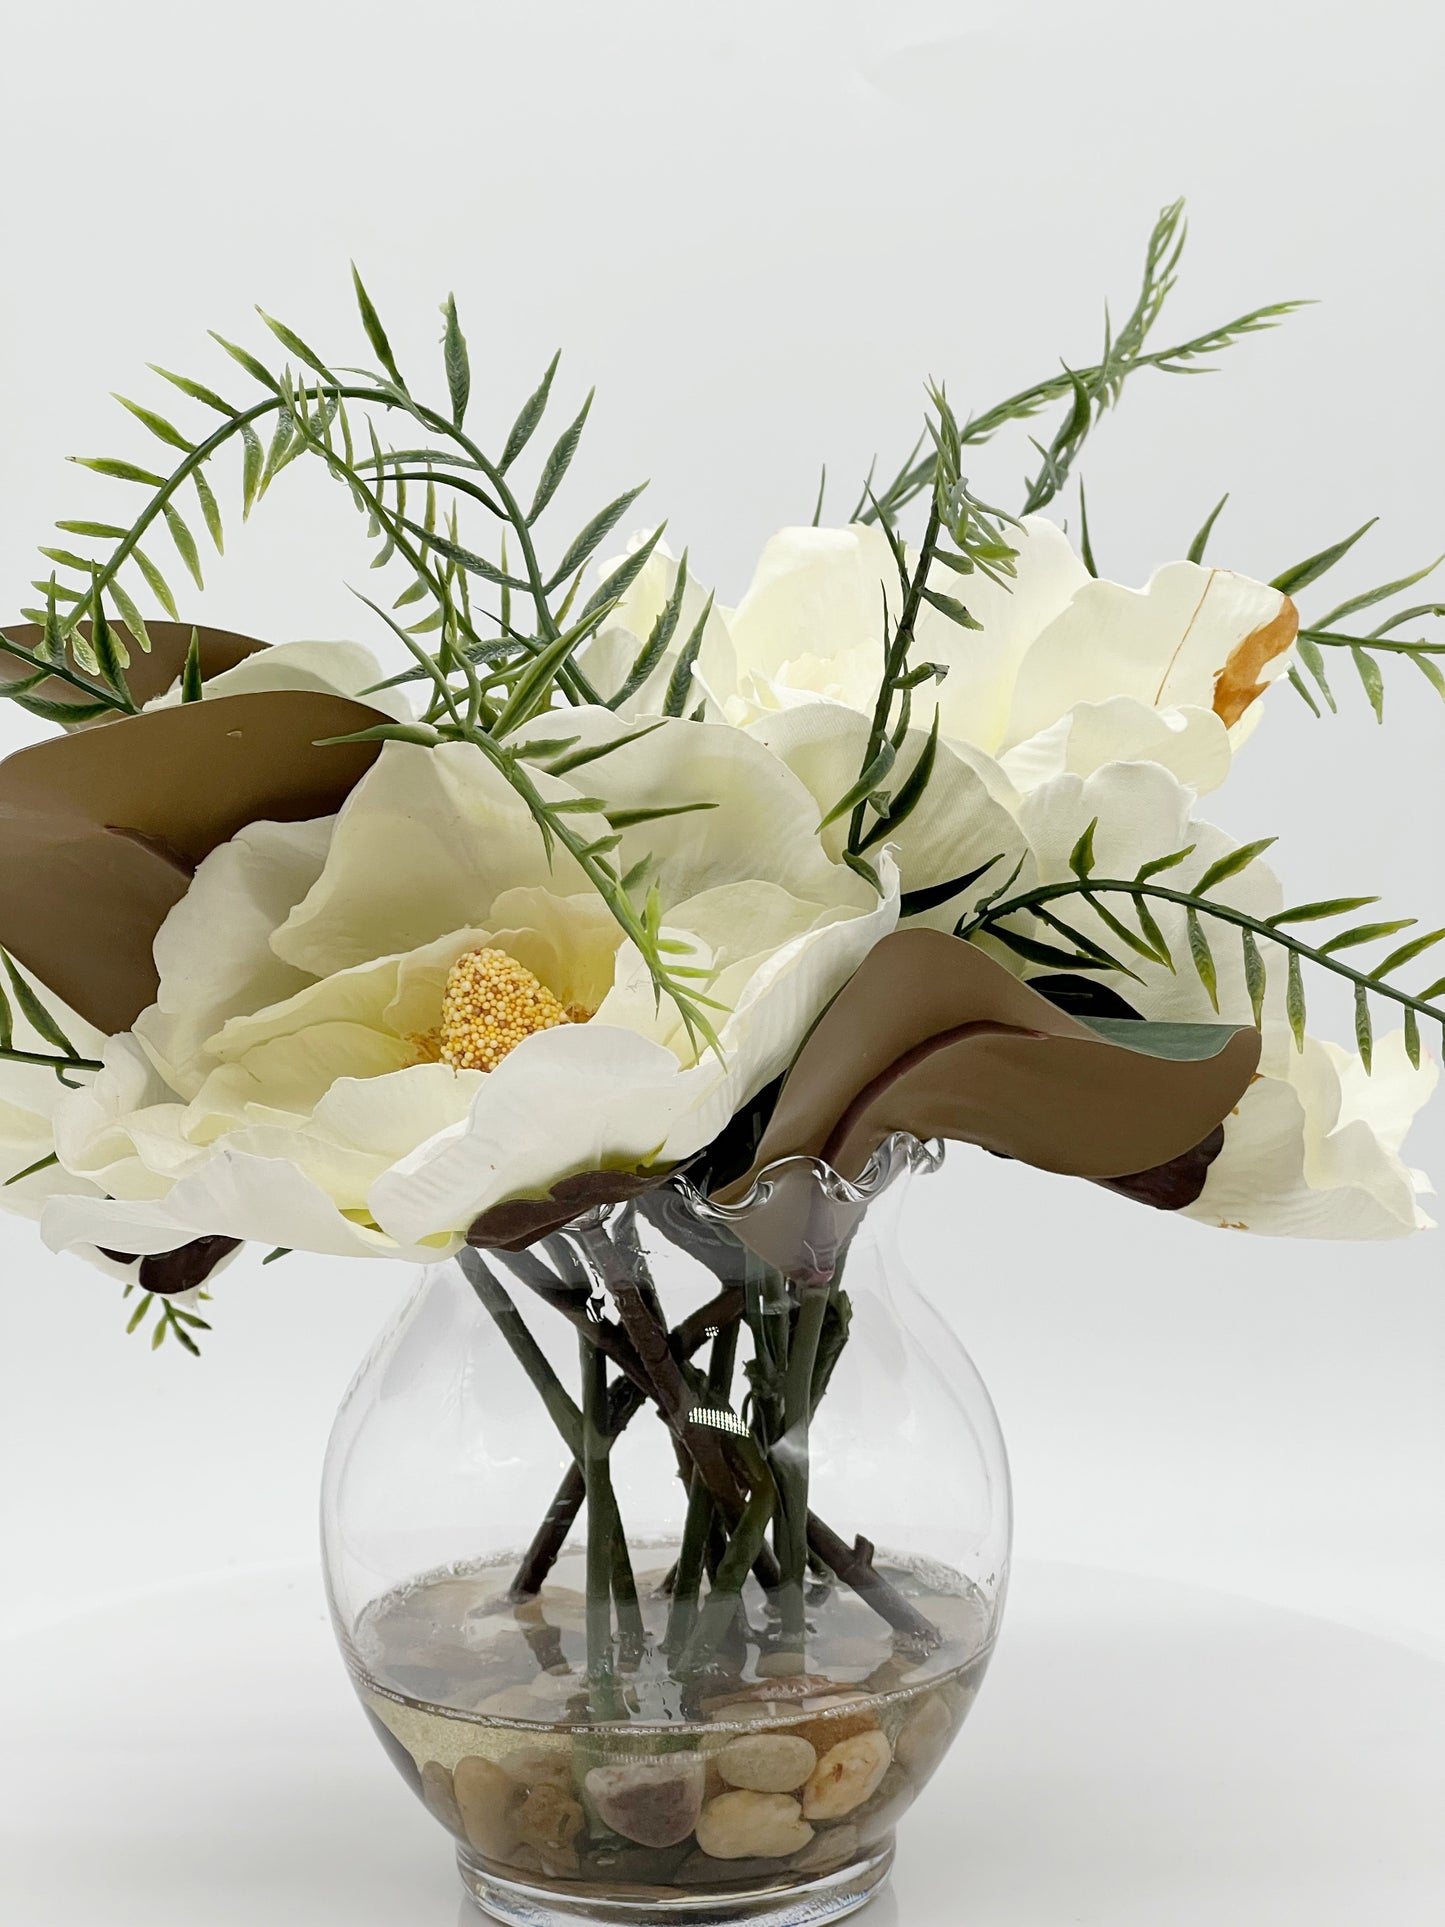 Flores de magnolia en jarrón de vidrio de 6" con piedras de río